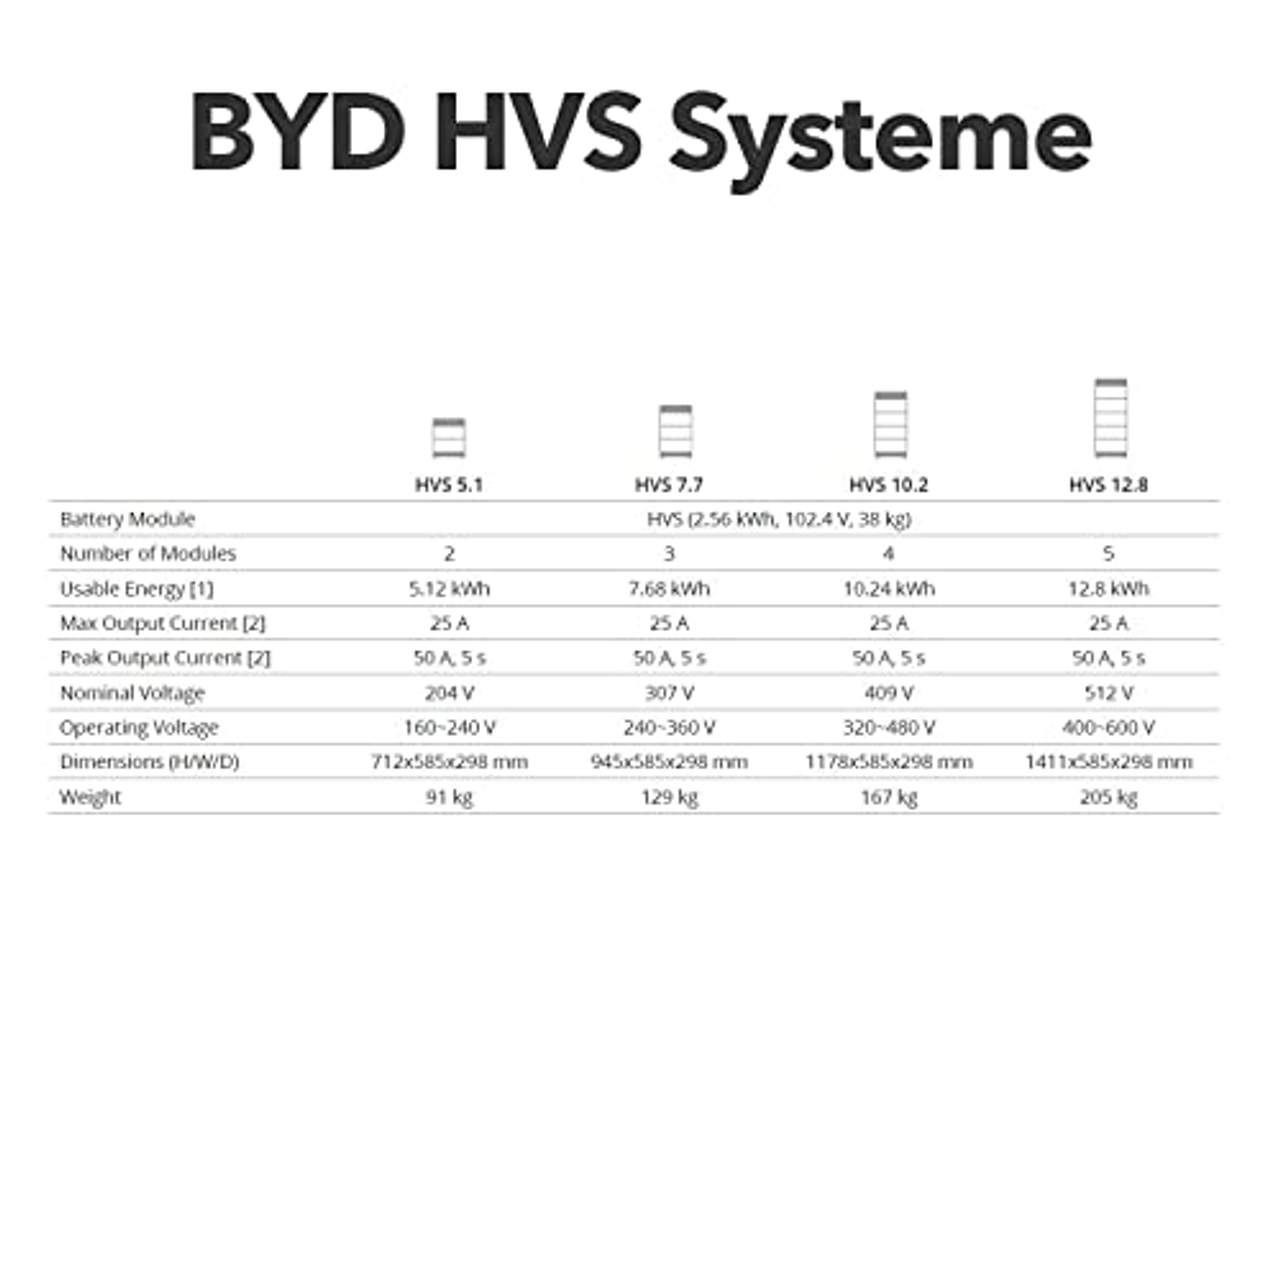 Power Werk BYD HVS Speicher mit 7.7 kWh